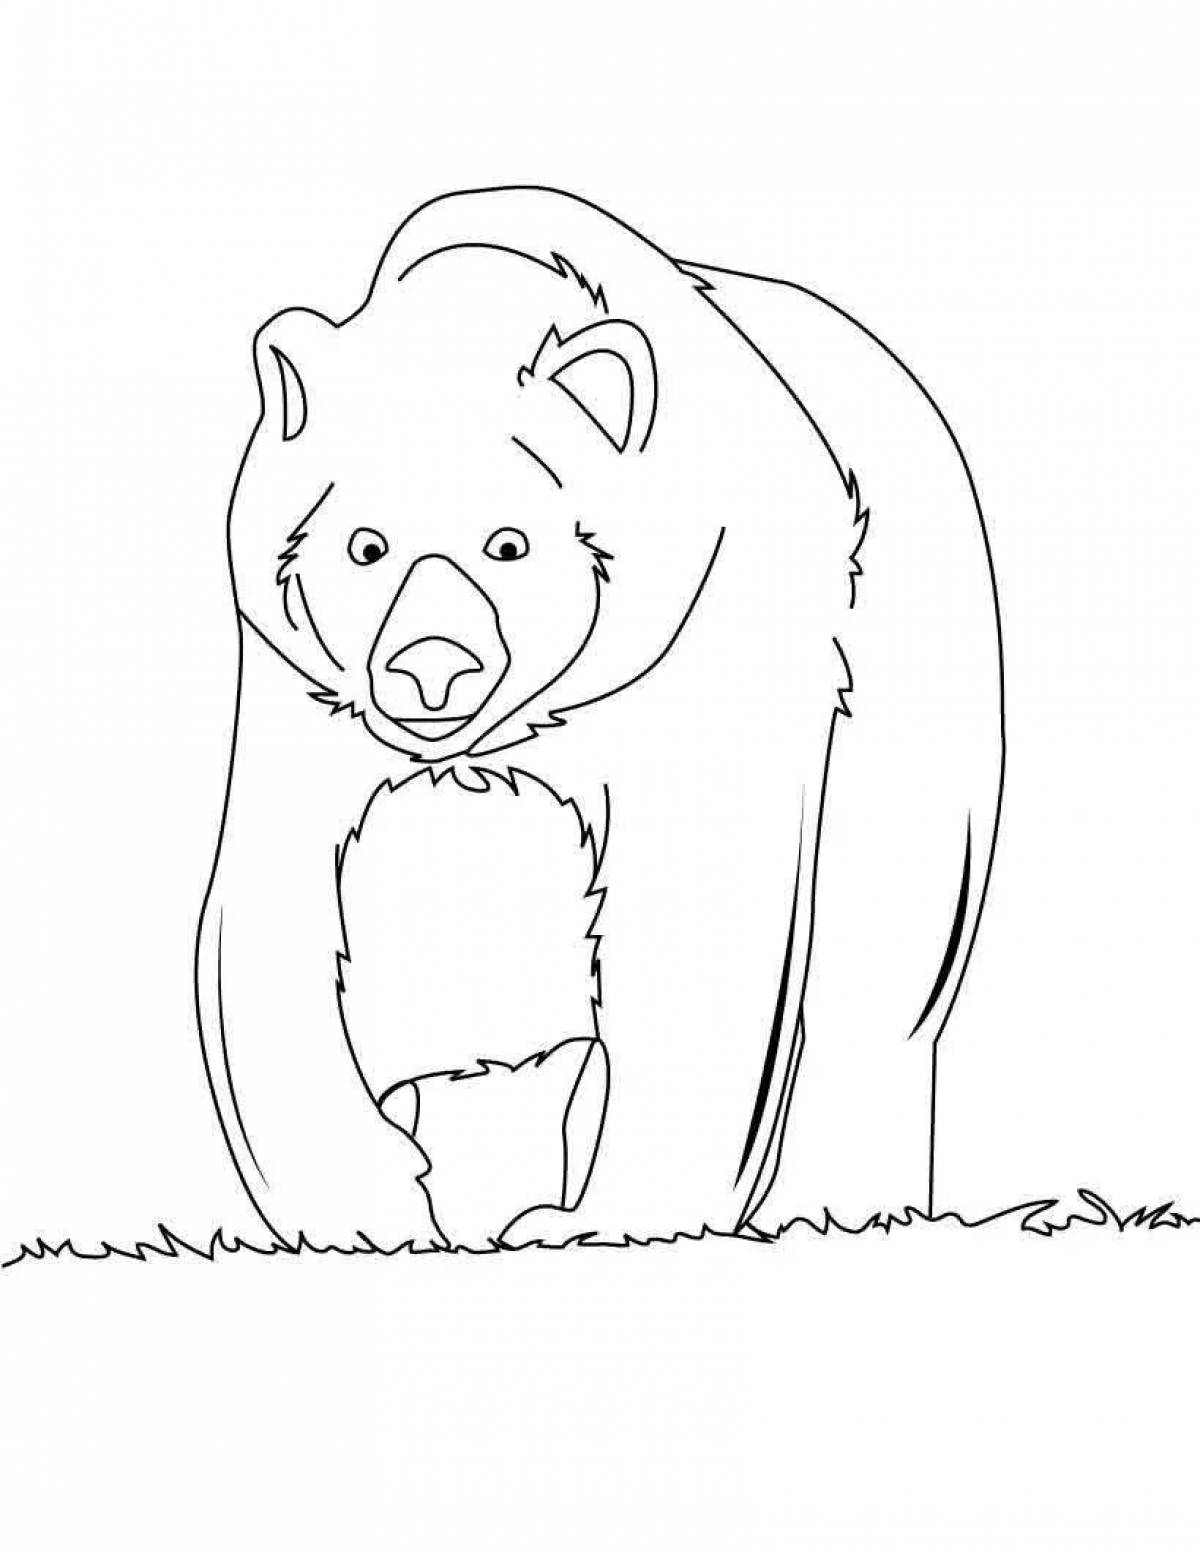 Adorable Himalayan bear coloring book